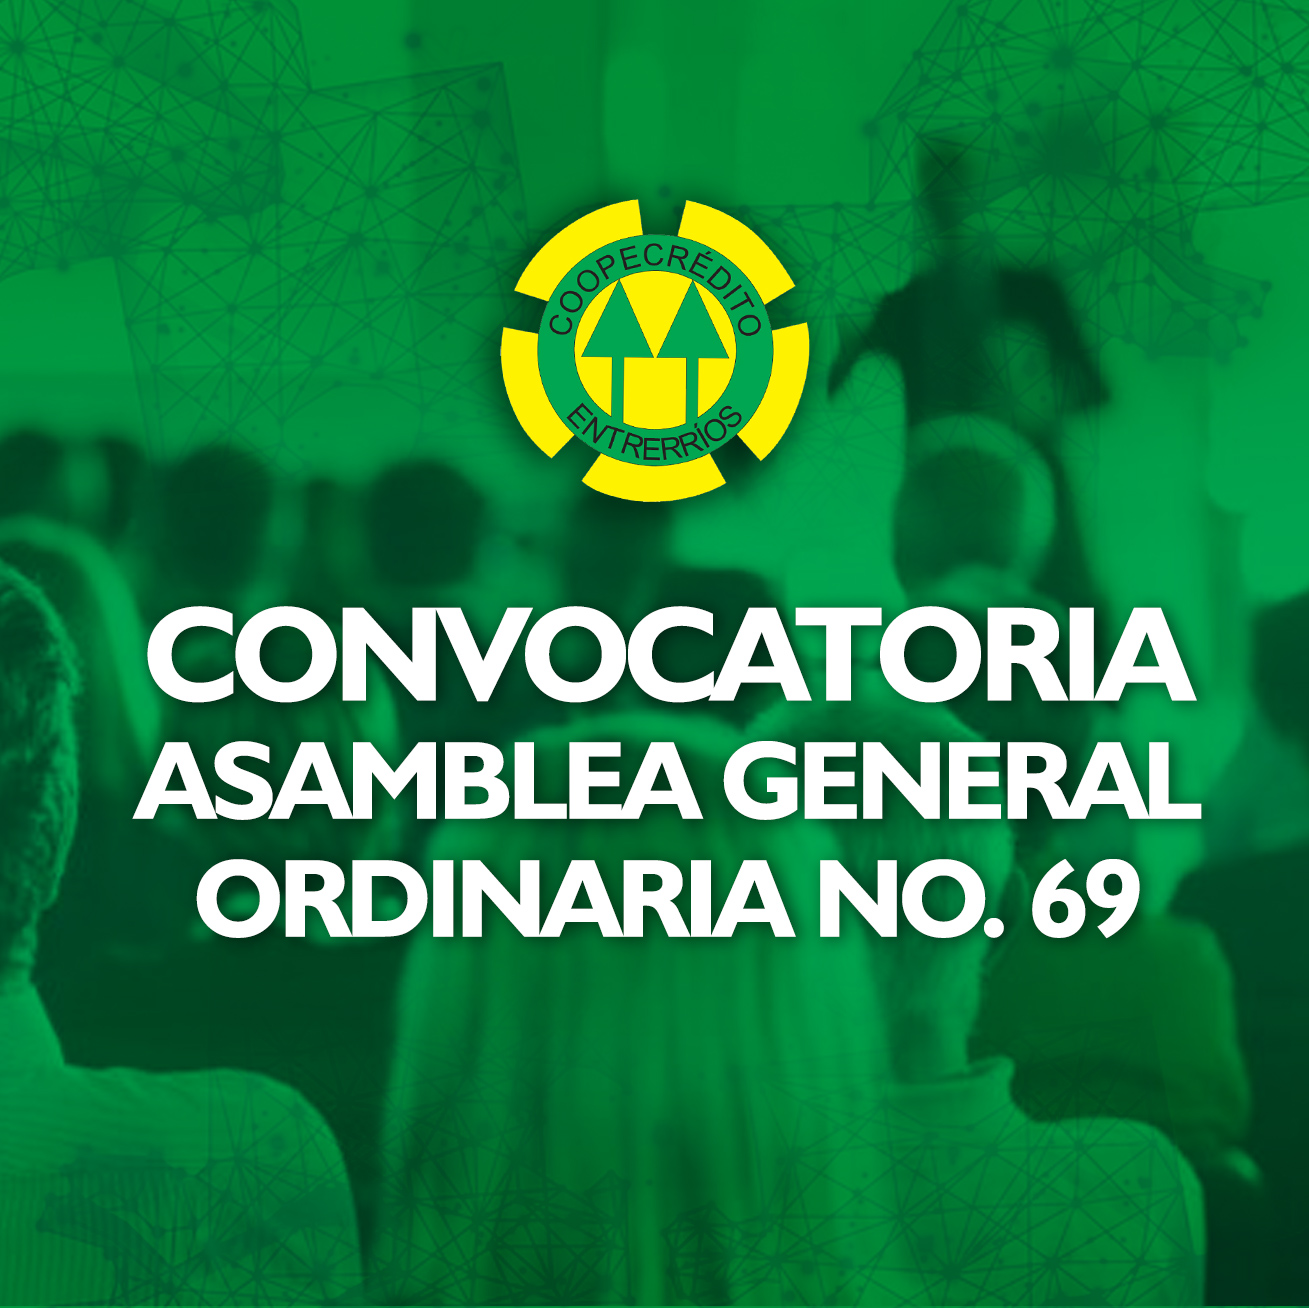 CONVOCATORIA ASAMBLEA GENERAL ORDINARIA No. 69